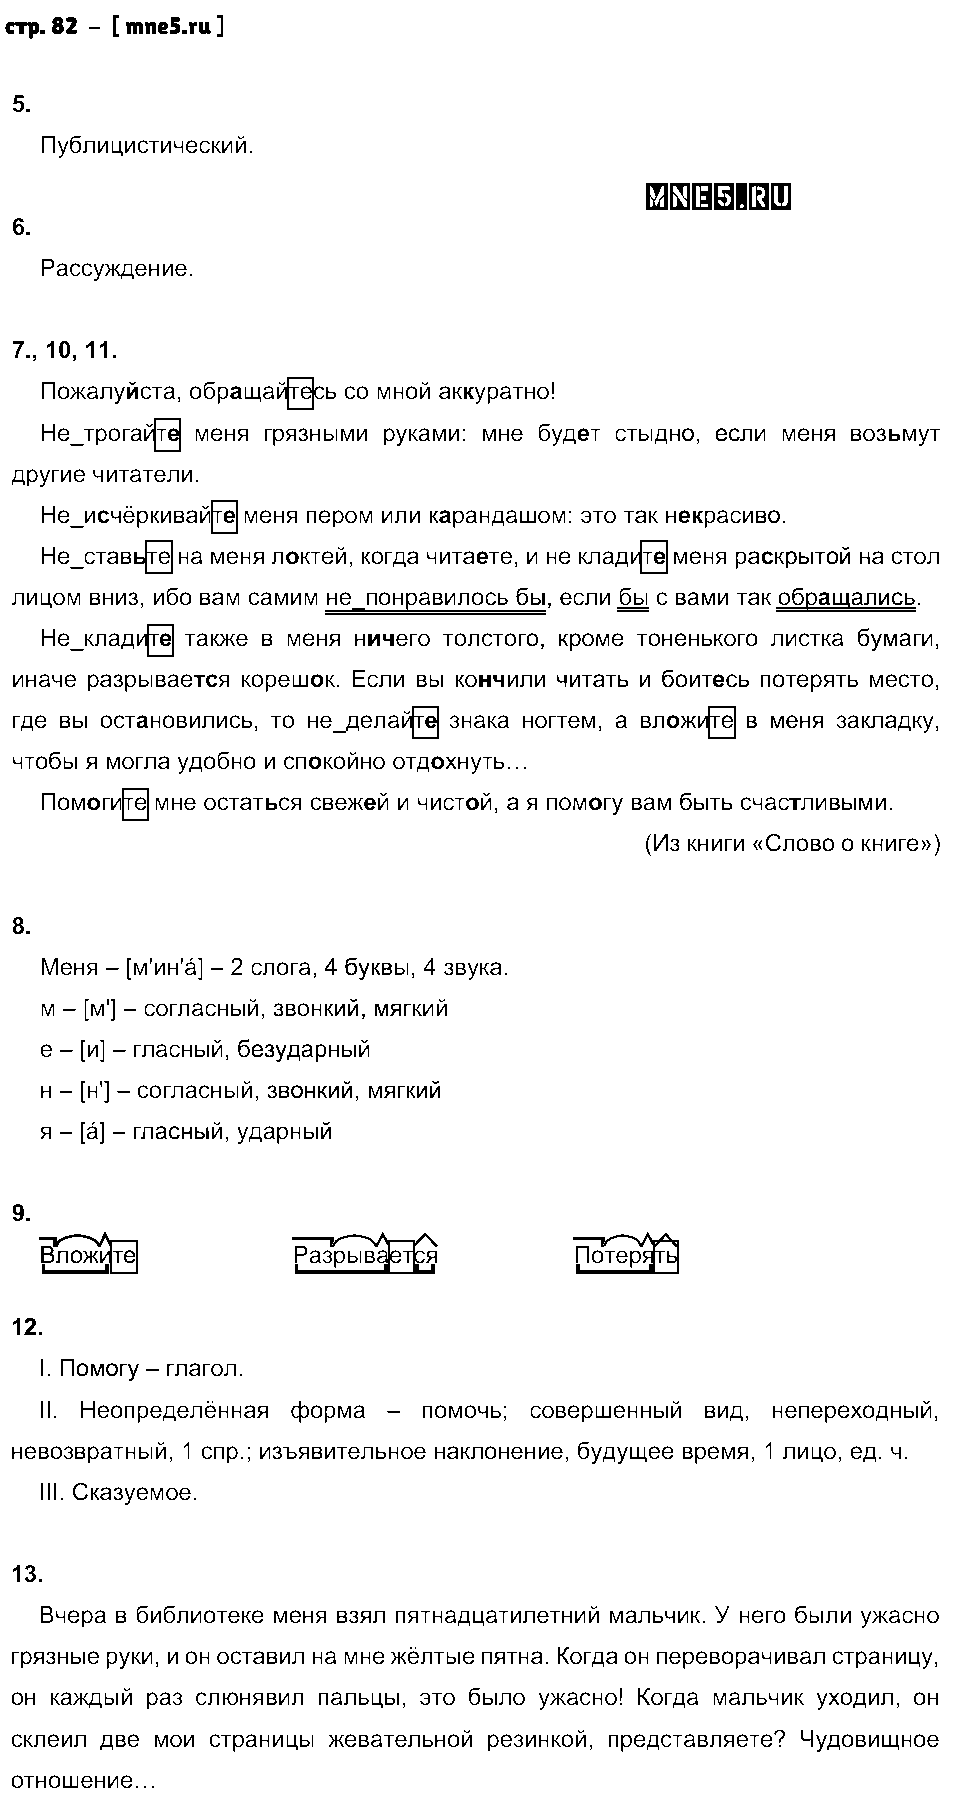 ГДЗ Русский язык 6 класс - стр. 82